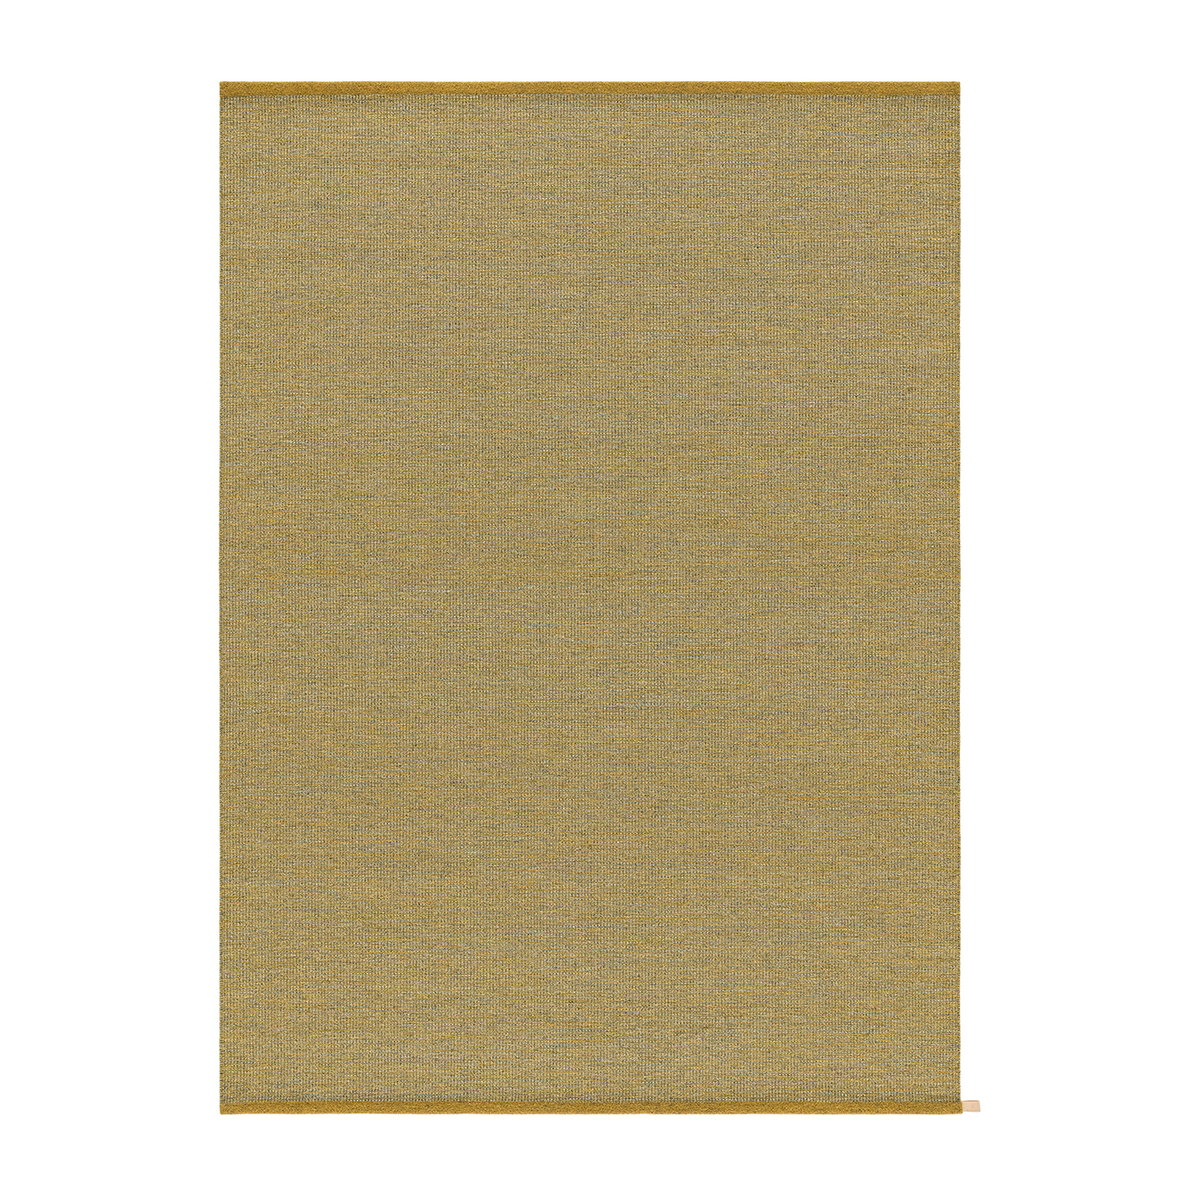 Kasthall Harper vloerkleed Golden ash 240x160 cm